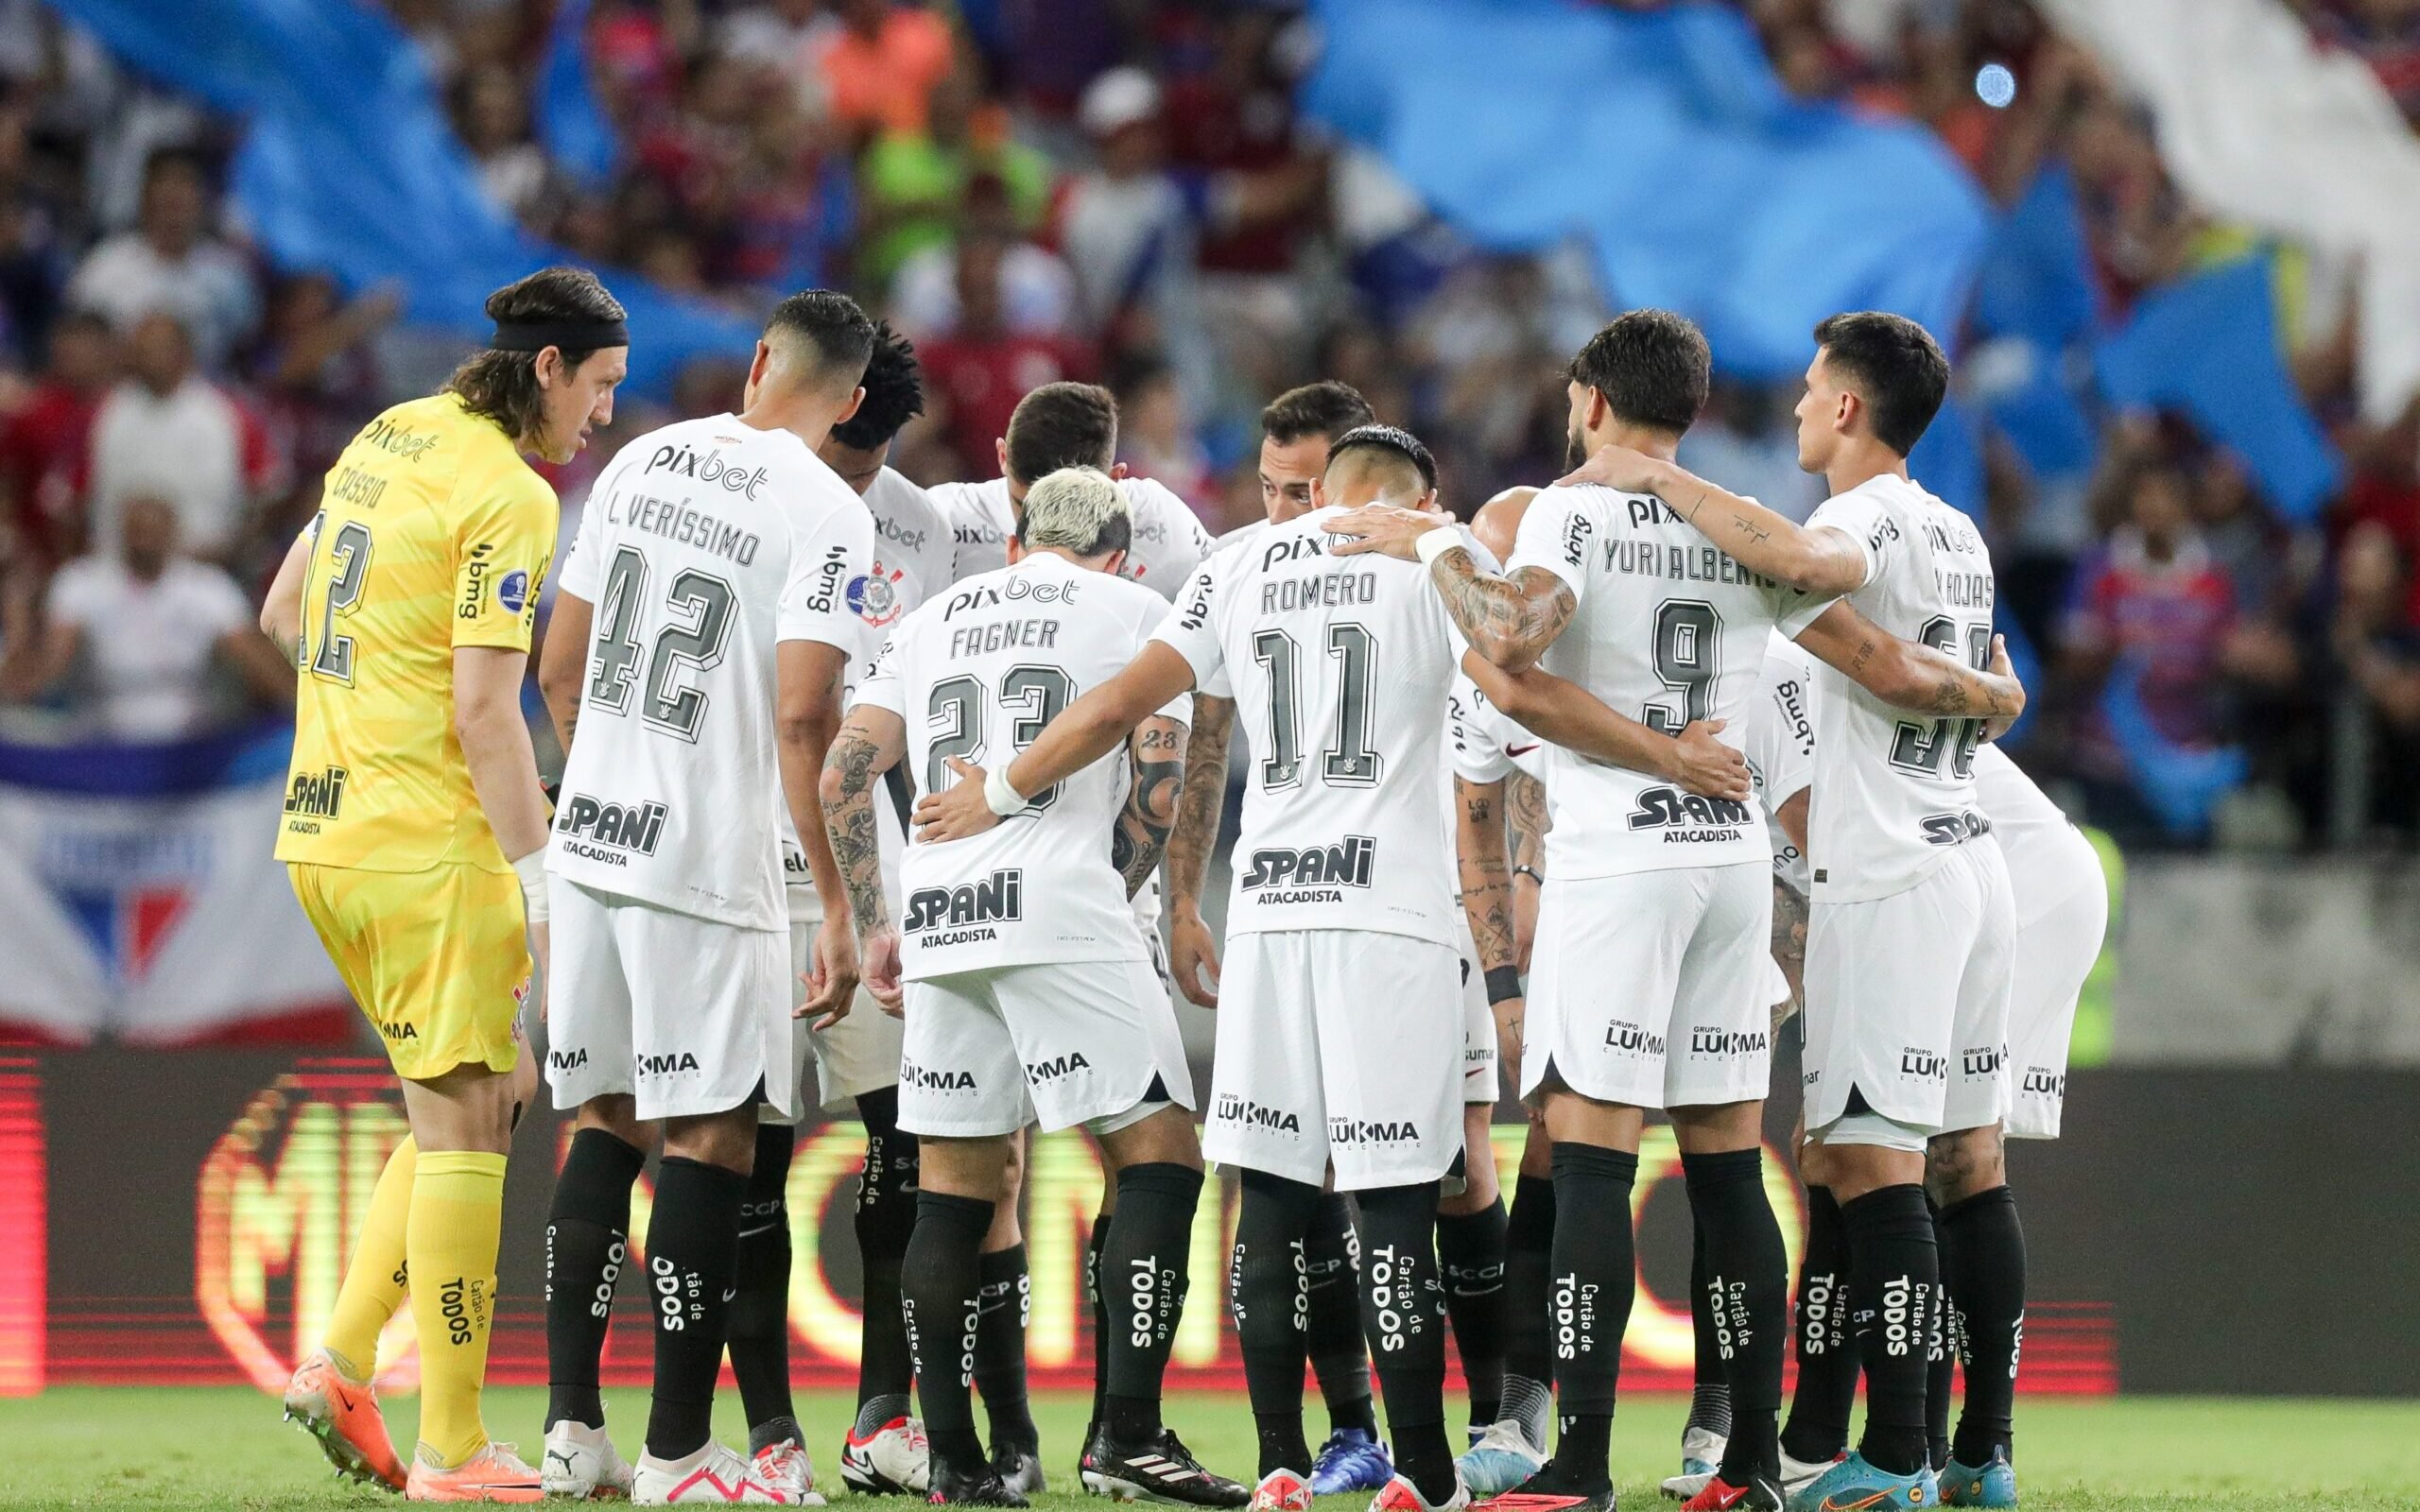 Campeonato Paulista 2023: A Promessa de Emoção e Competitividade